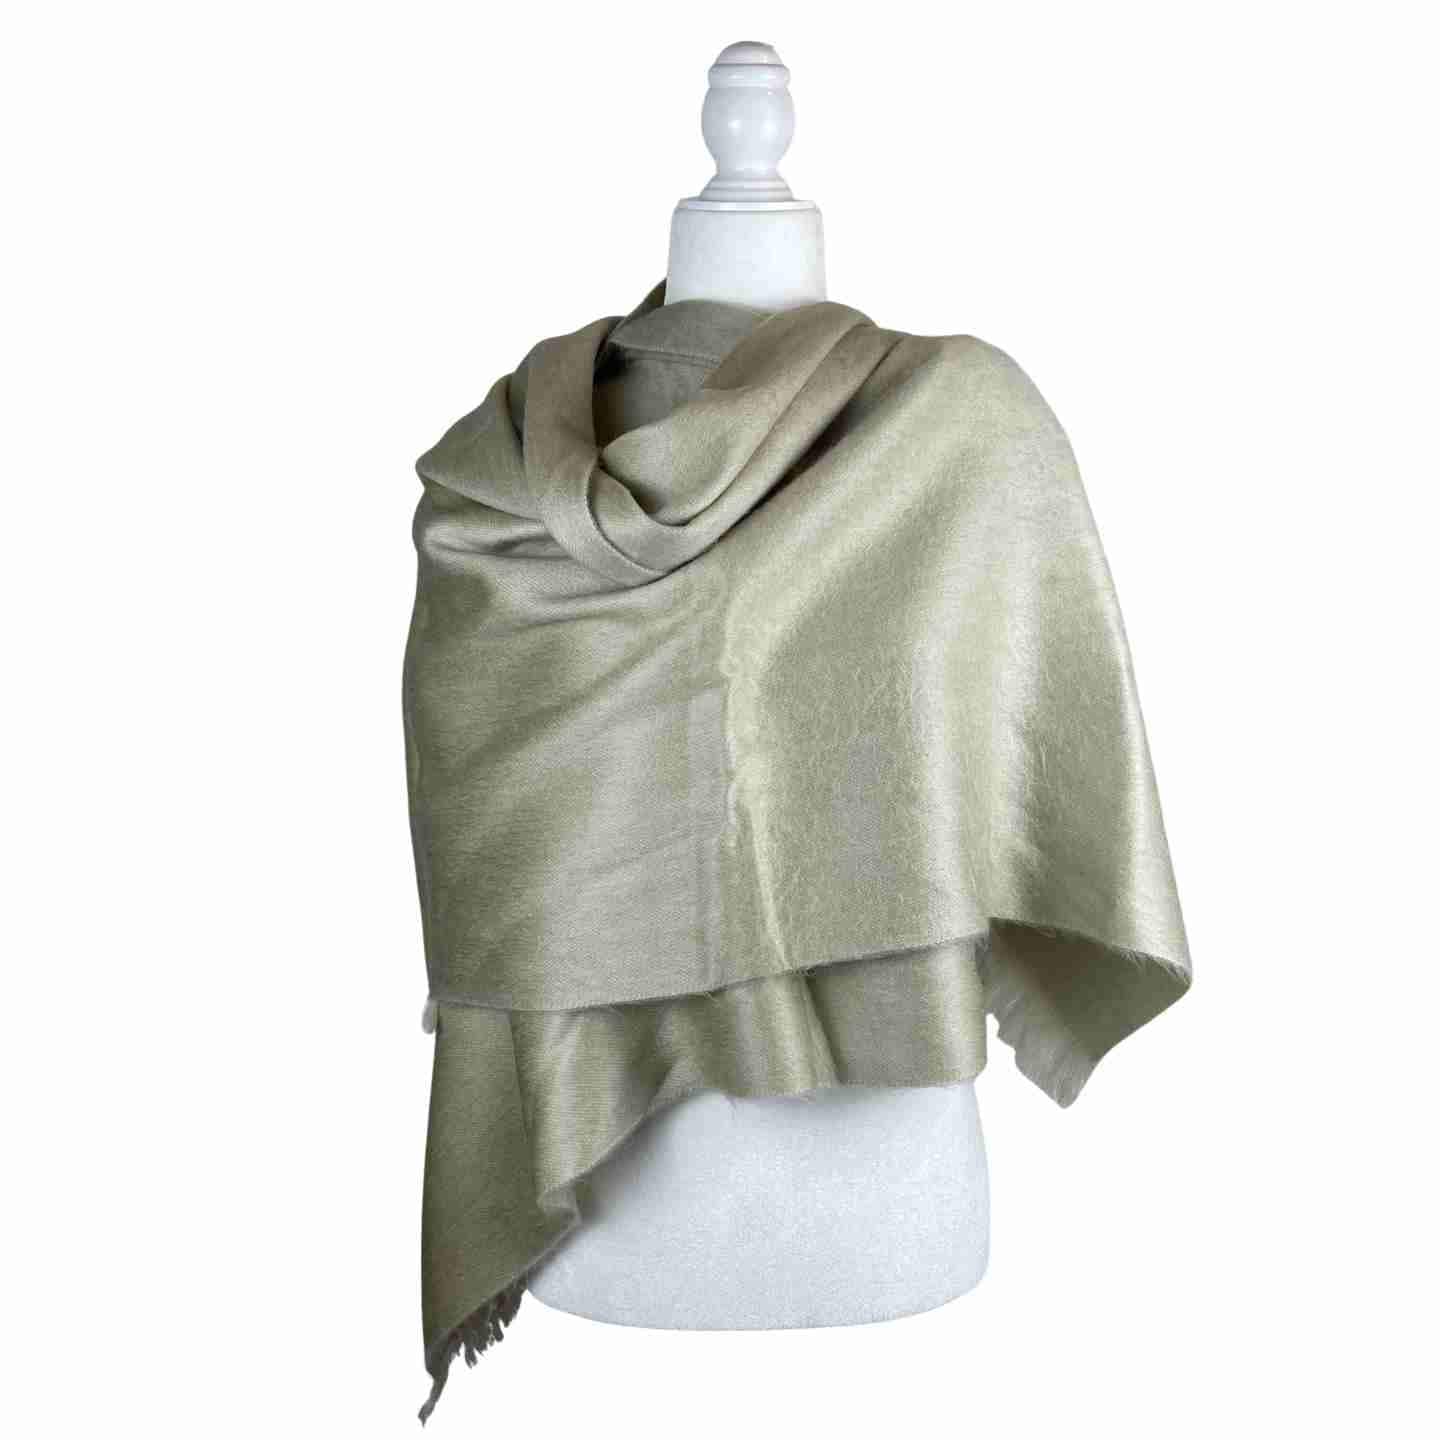 Soft and Warm Shoulder Shawl Wrap | Handcrafted Rebozo | Ecru Neutral